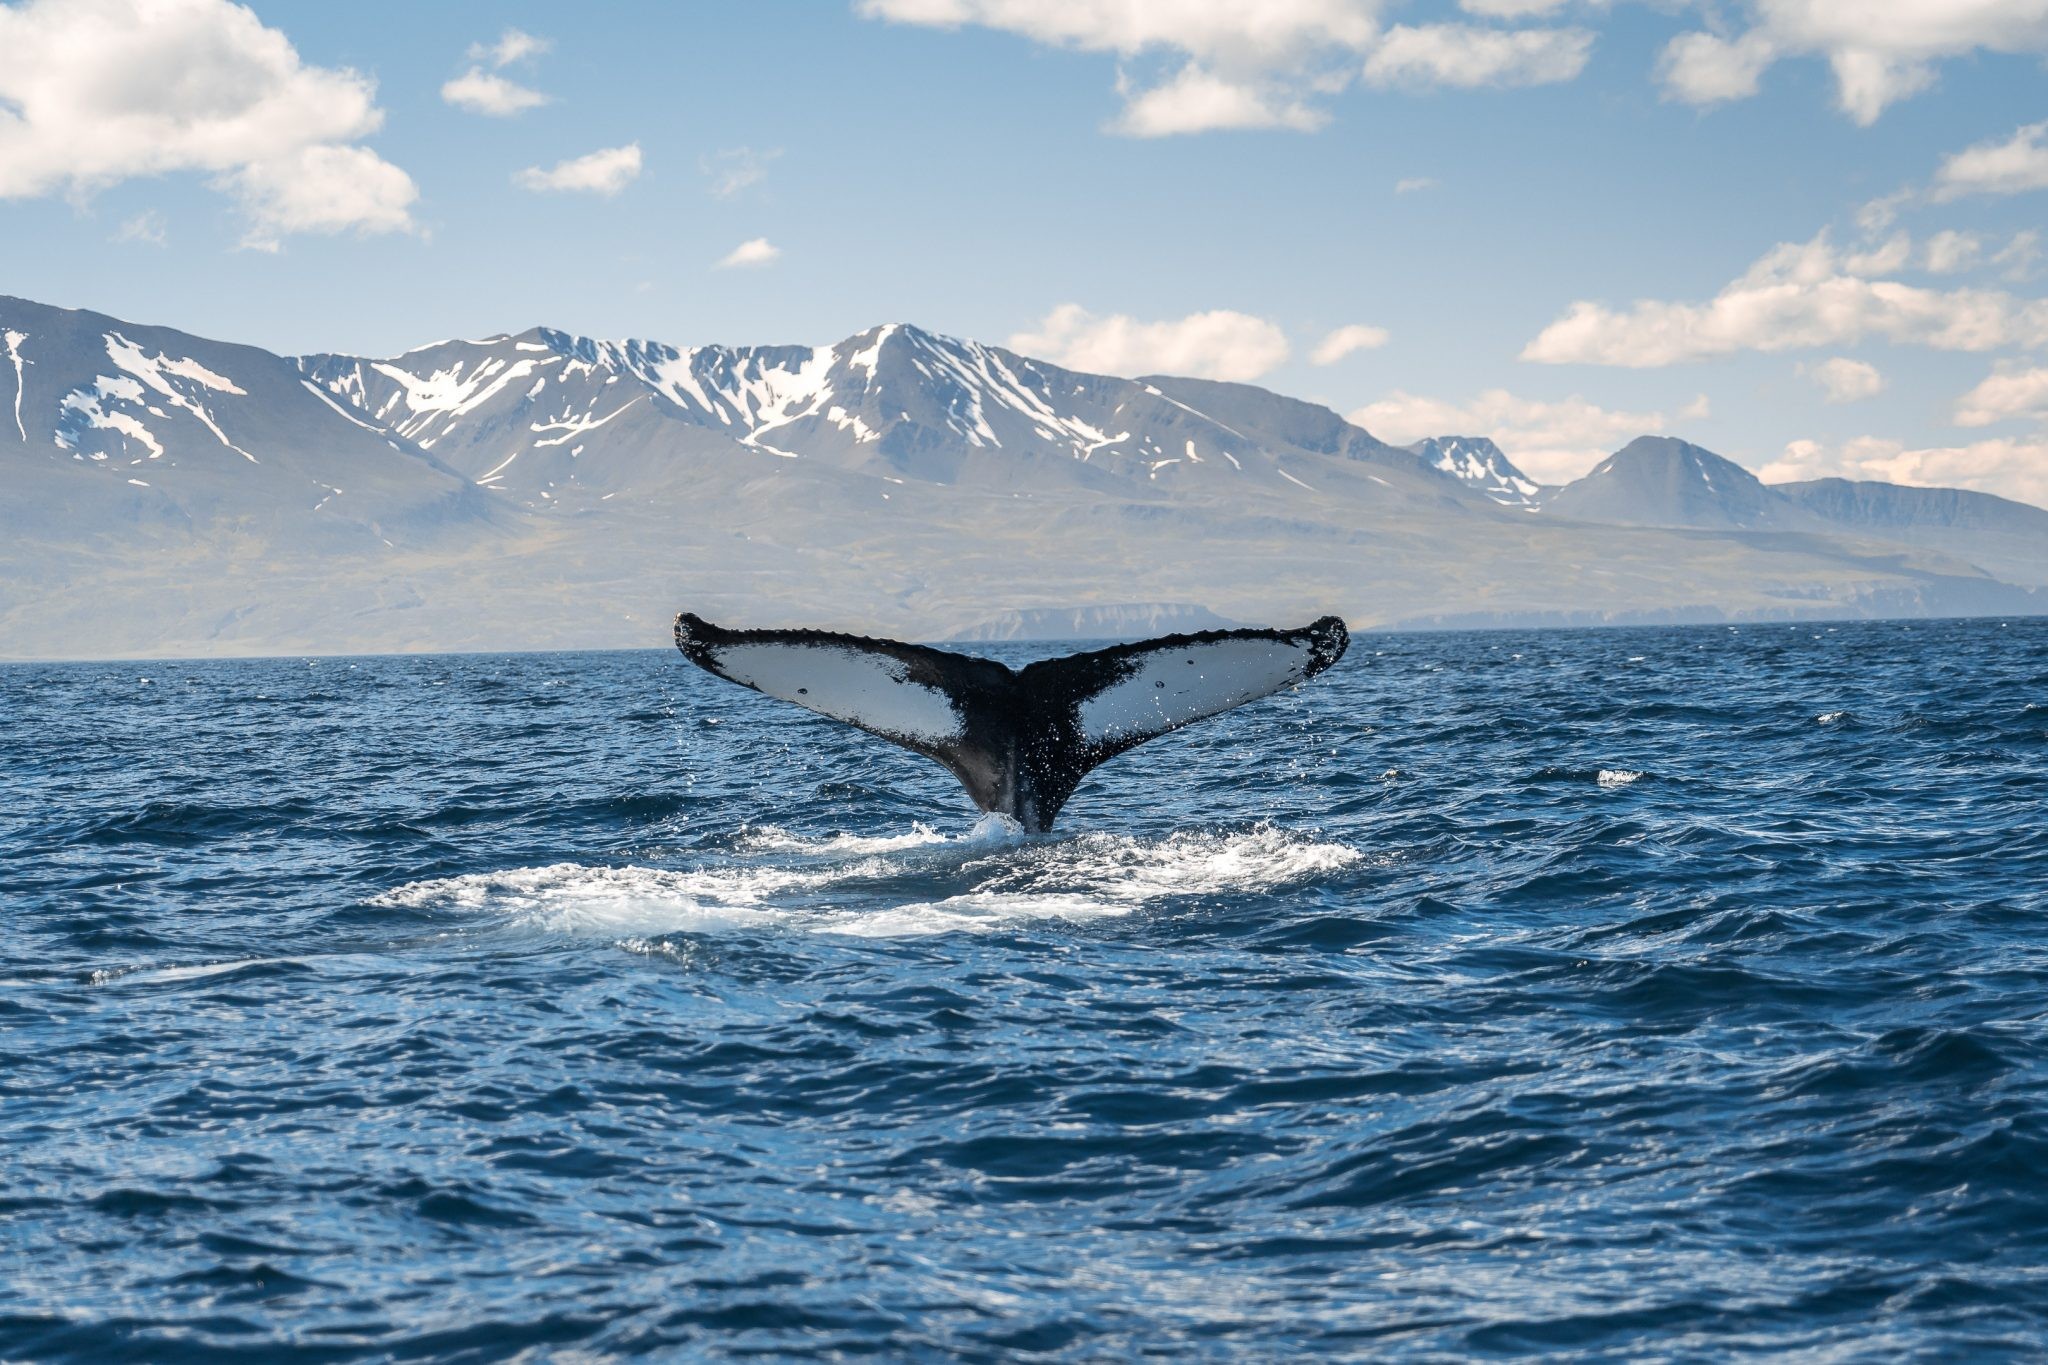 冰岛观鲸 | 如何优雅地观赏蓝灰色可爱生物—鲸鱼？ - 马蜂窝